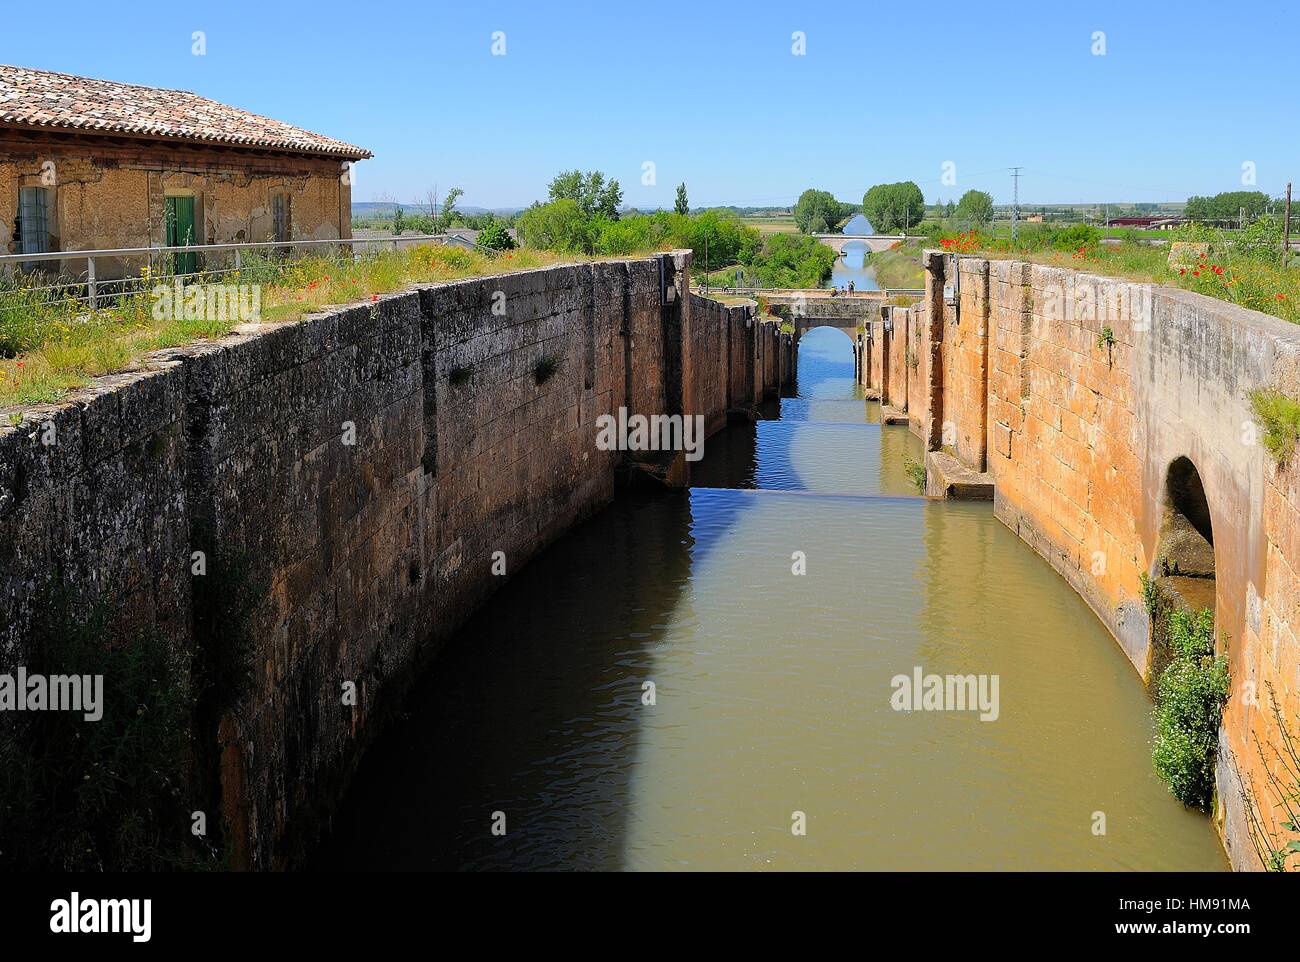 Canal de Castilla.Palencia province.Castilla y León.Spain Stock Photo